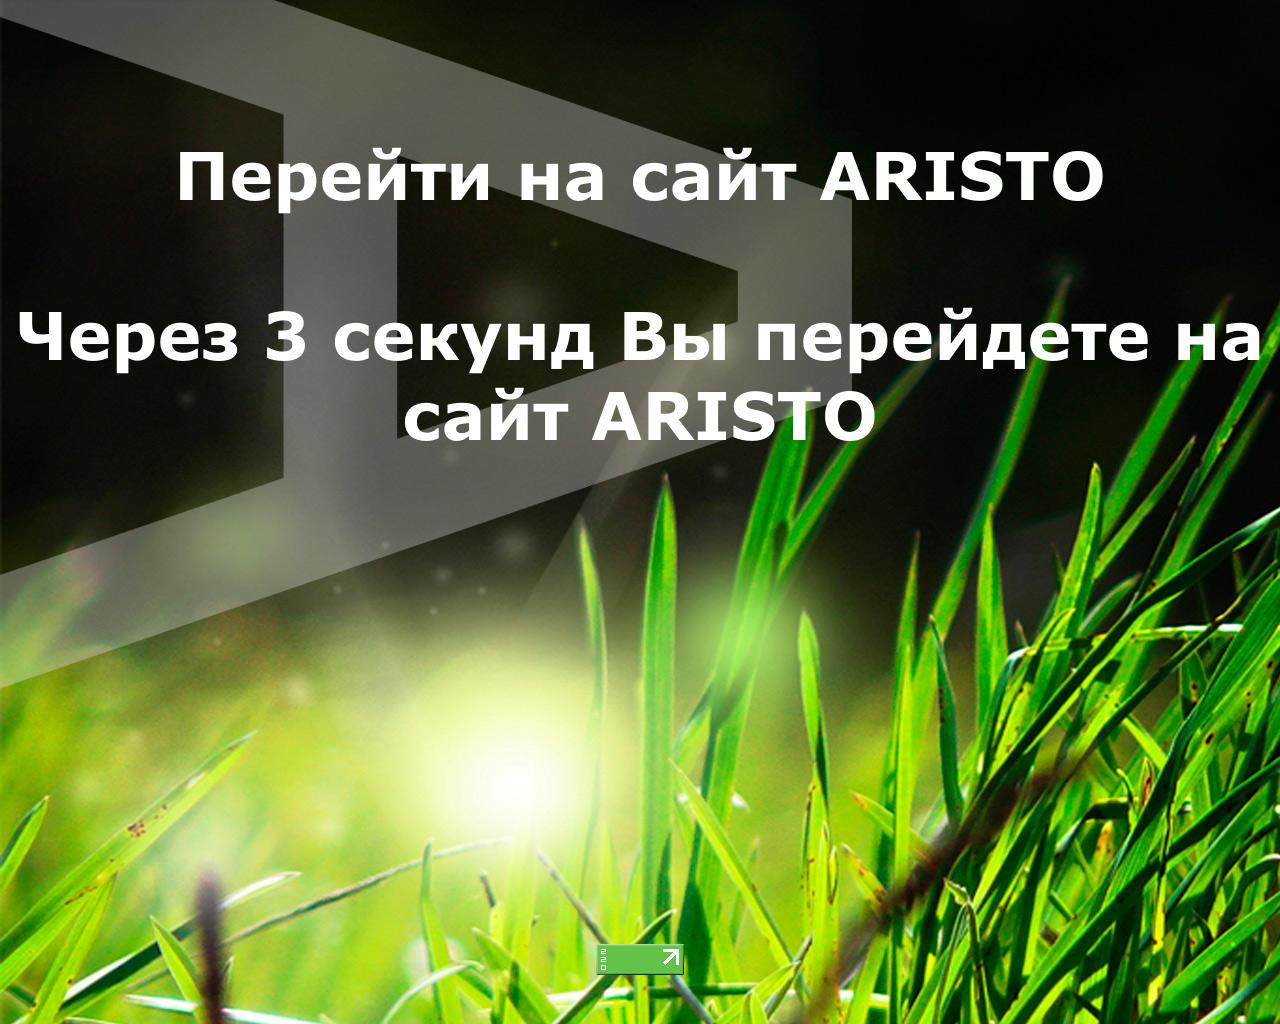 Изображение сайта aristo-aps.ru в разрешении 1280x1024